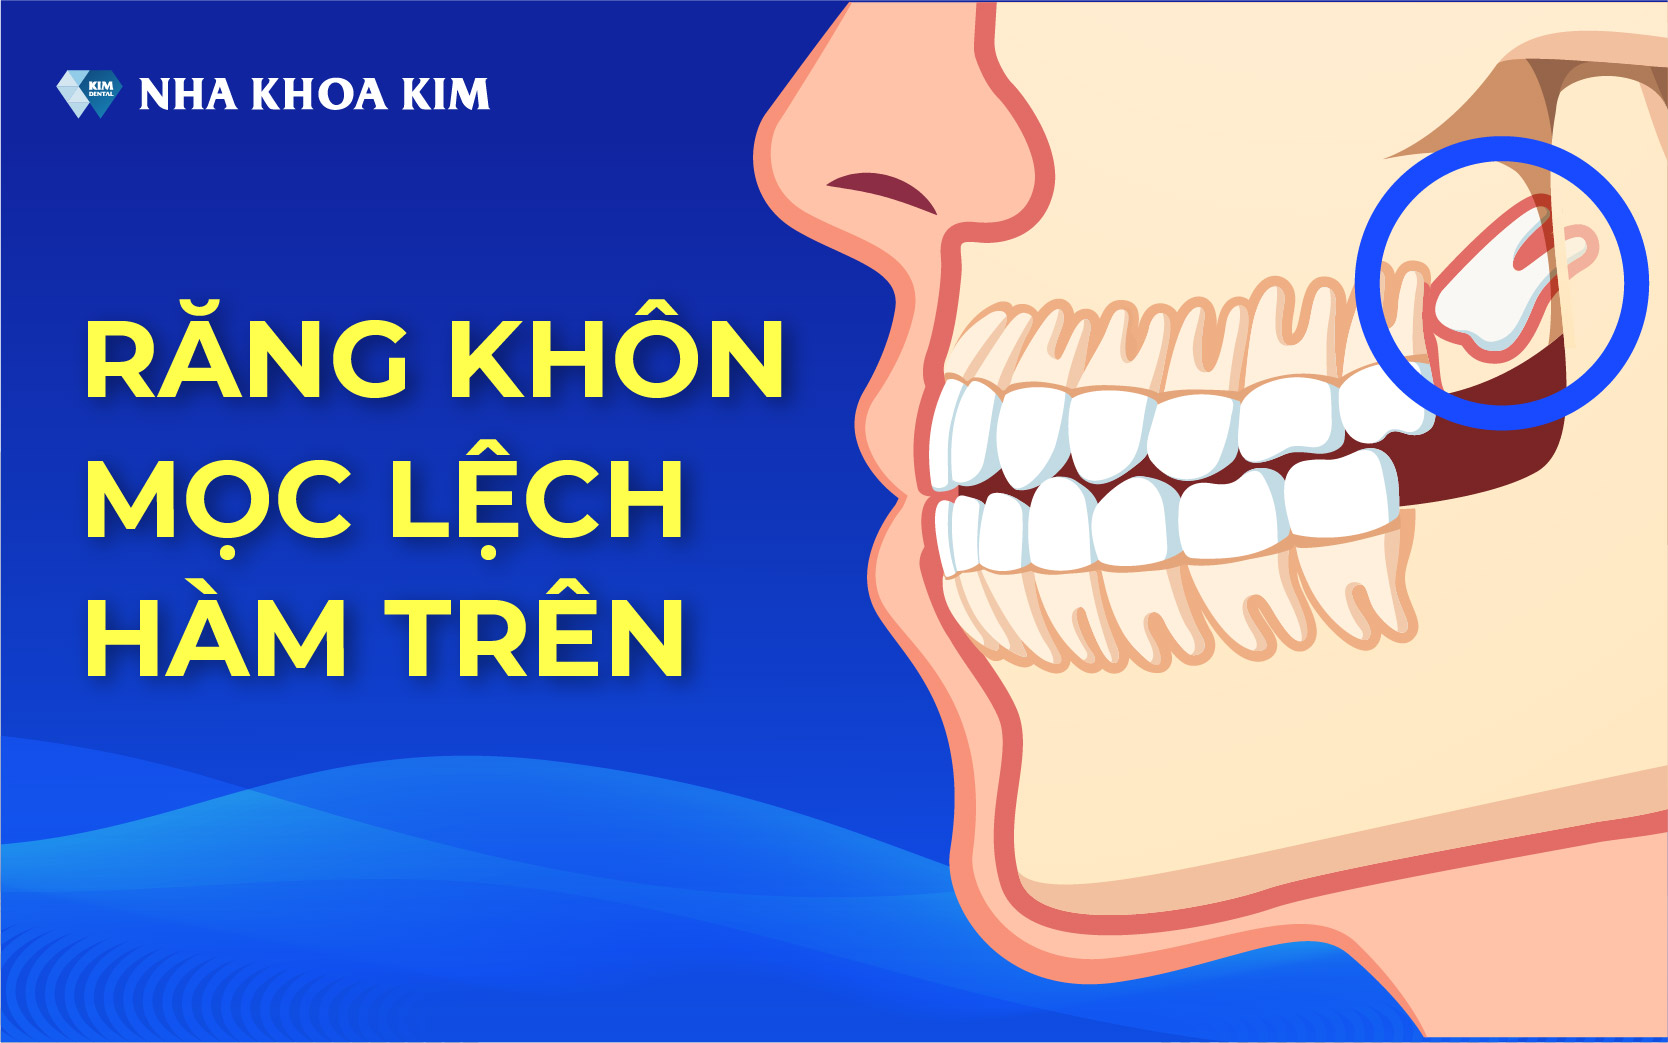 Răng số 8 mọc lệch tác động lên các răng khác gây ra đau nhức